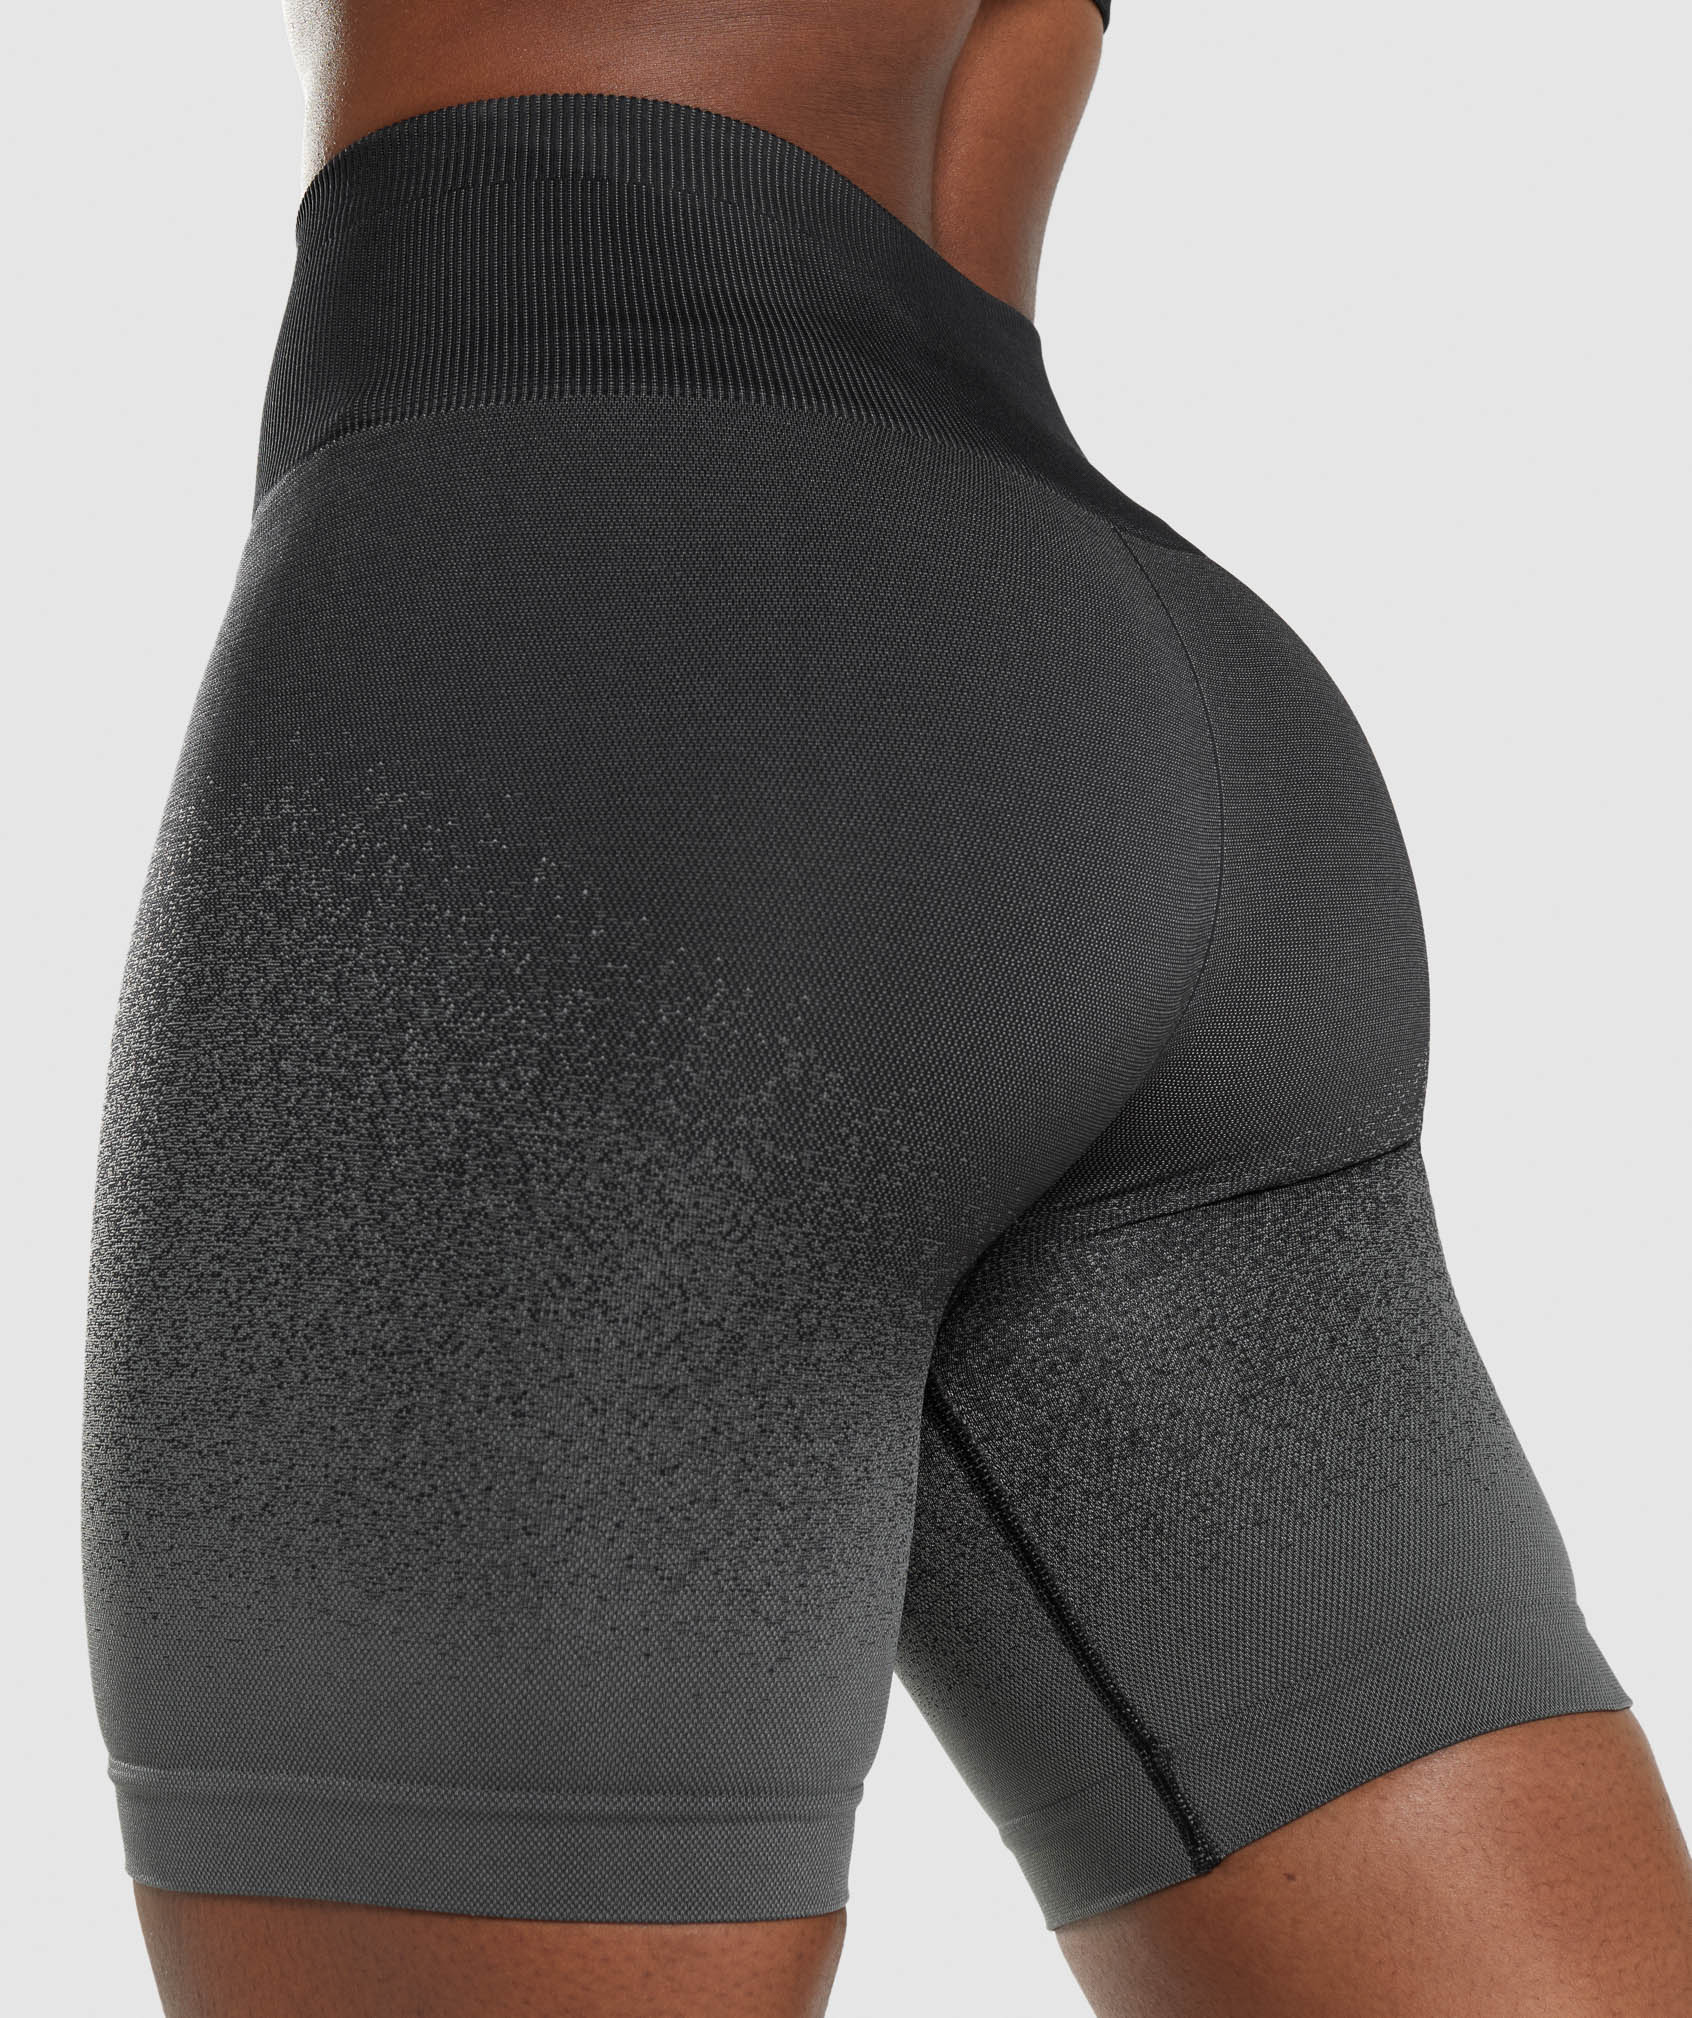 Gymshark Flex Cycling Shorts - Black/Charcoal  Cycling shorts, Black  charcoal, High waisted shorts